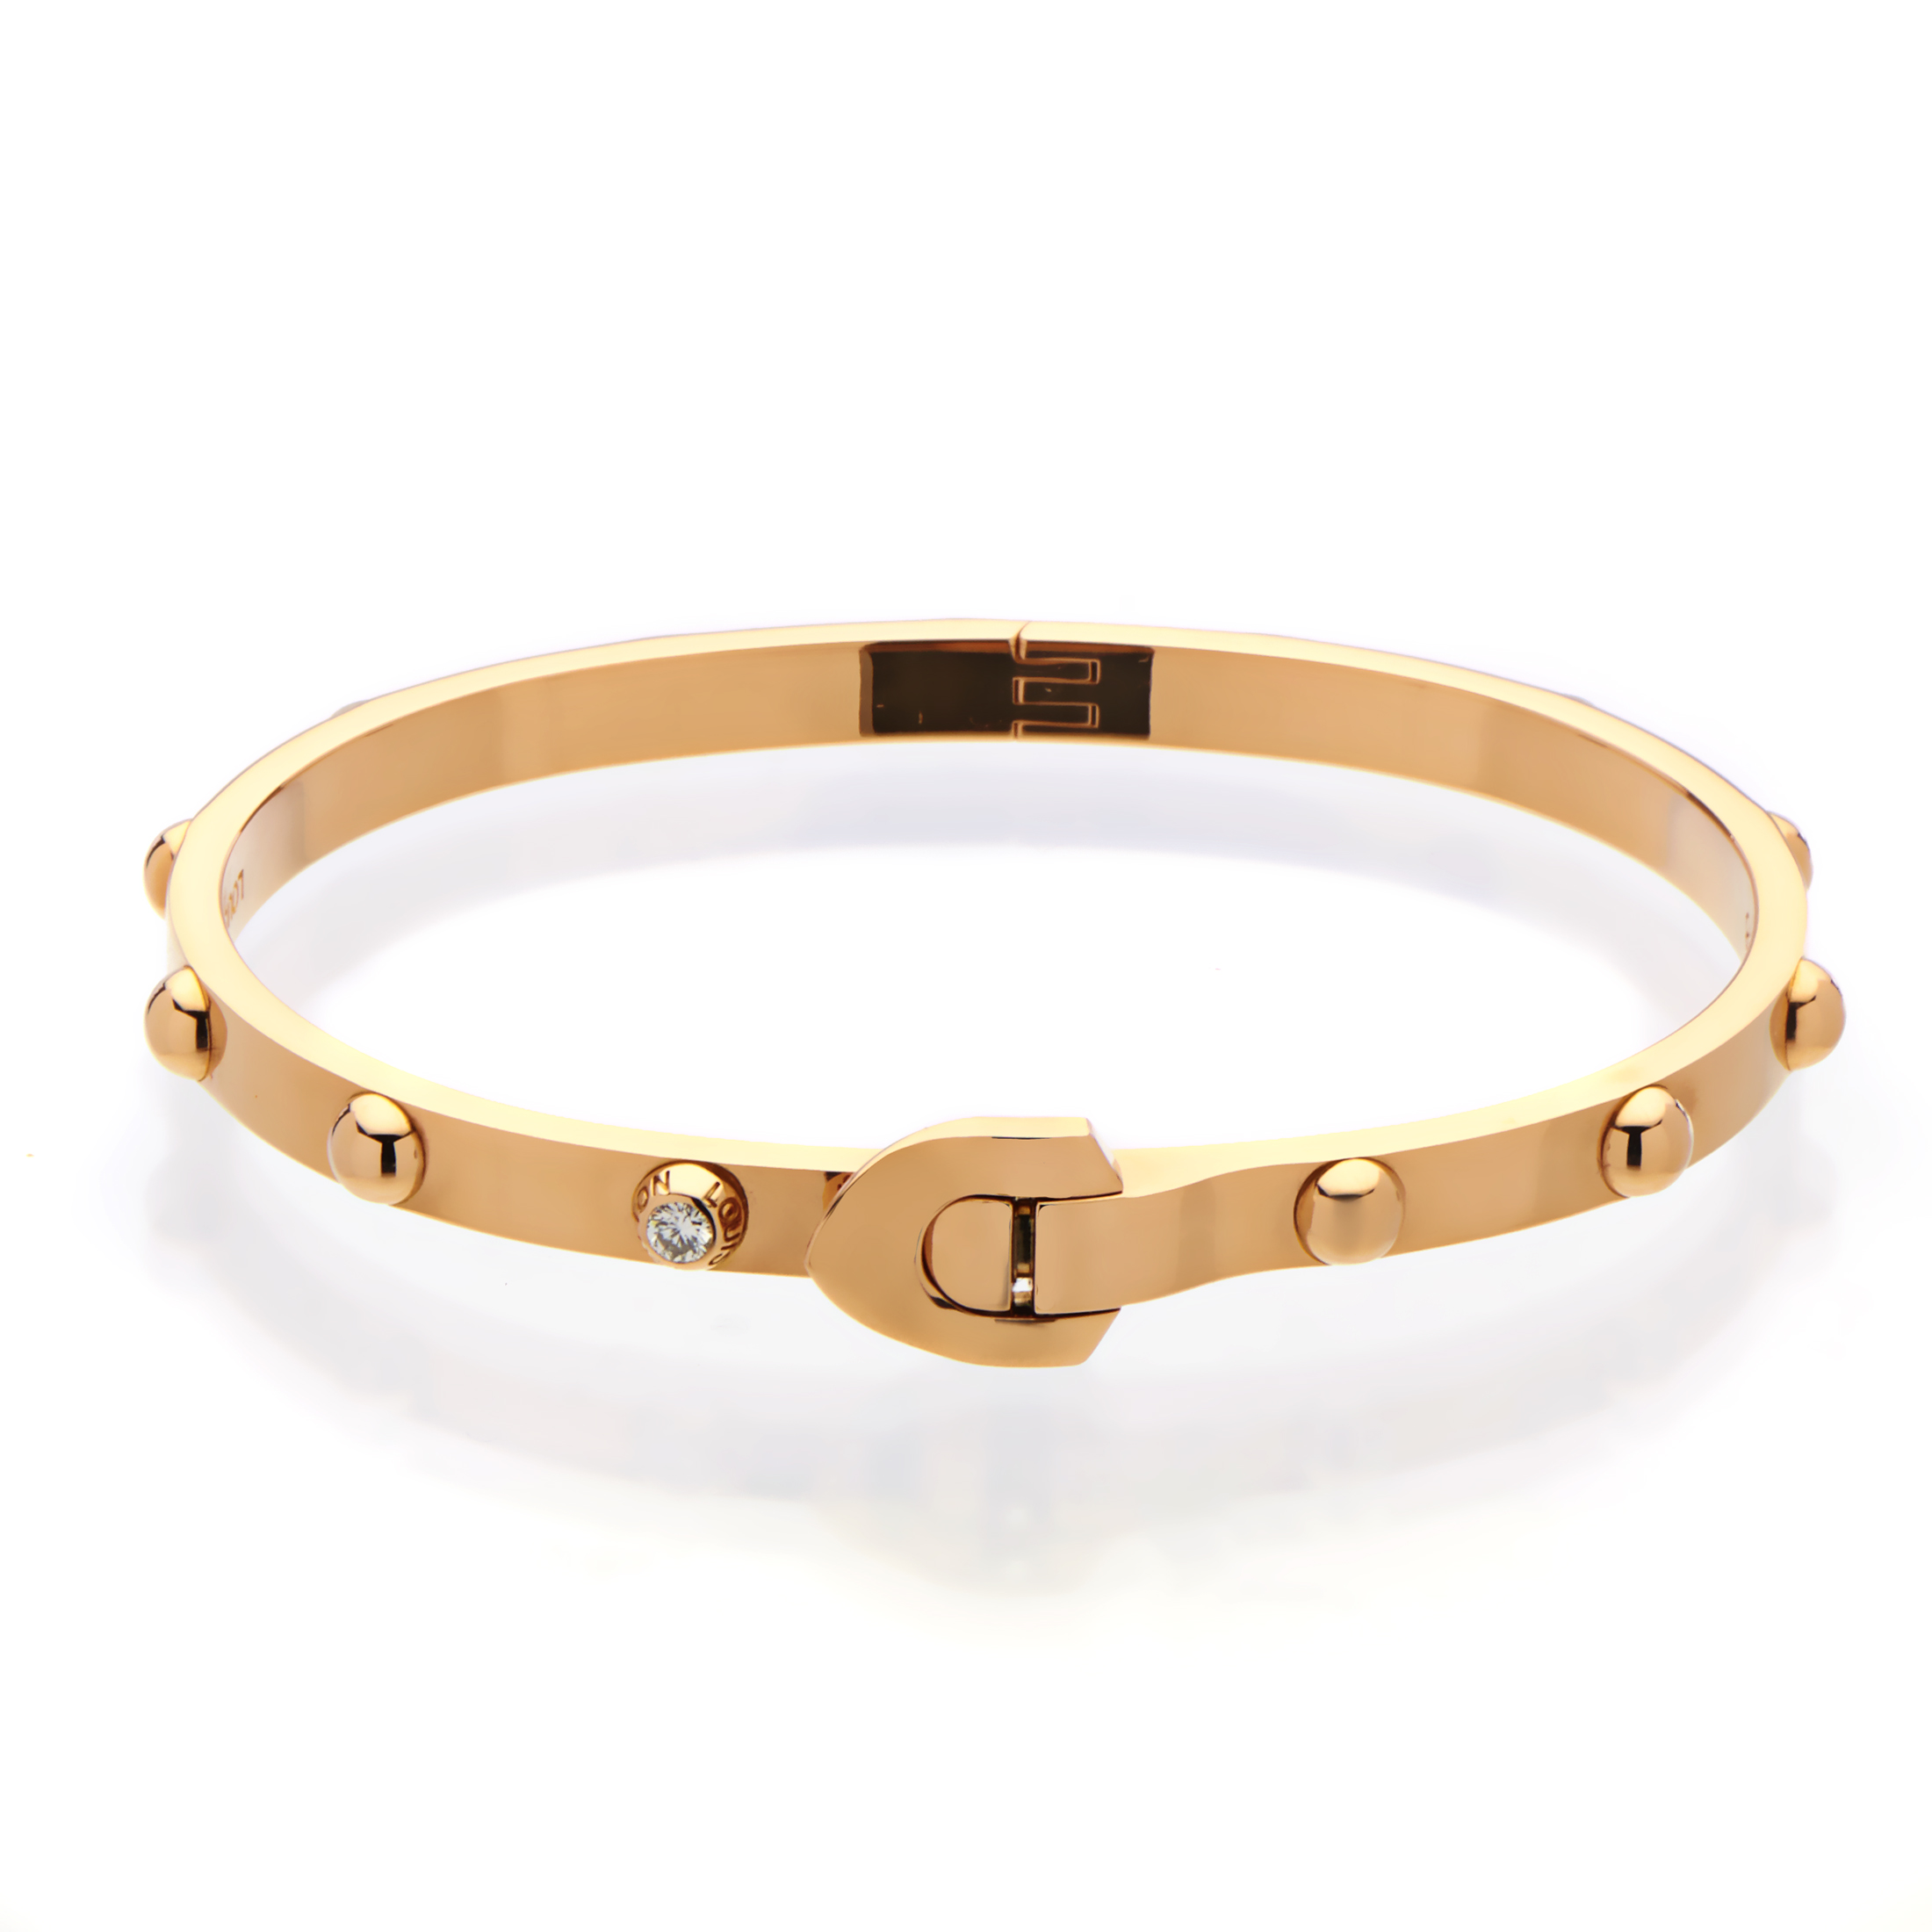 Louis Vuitton Womens 18K Rose Gold Diamond Bangle Bracelet Size 18 | eBay